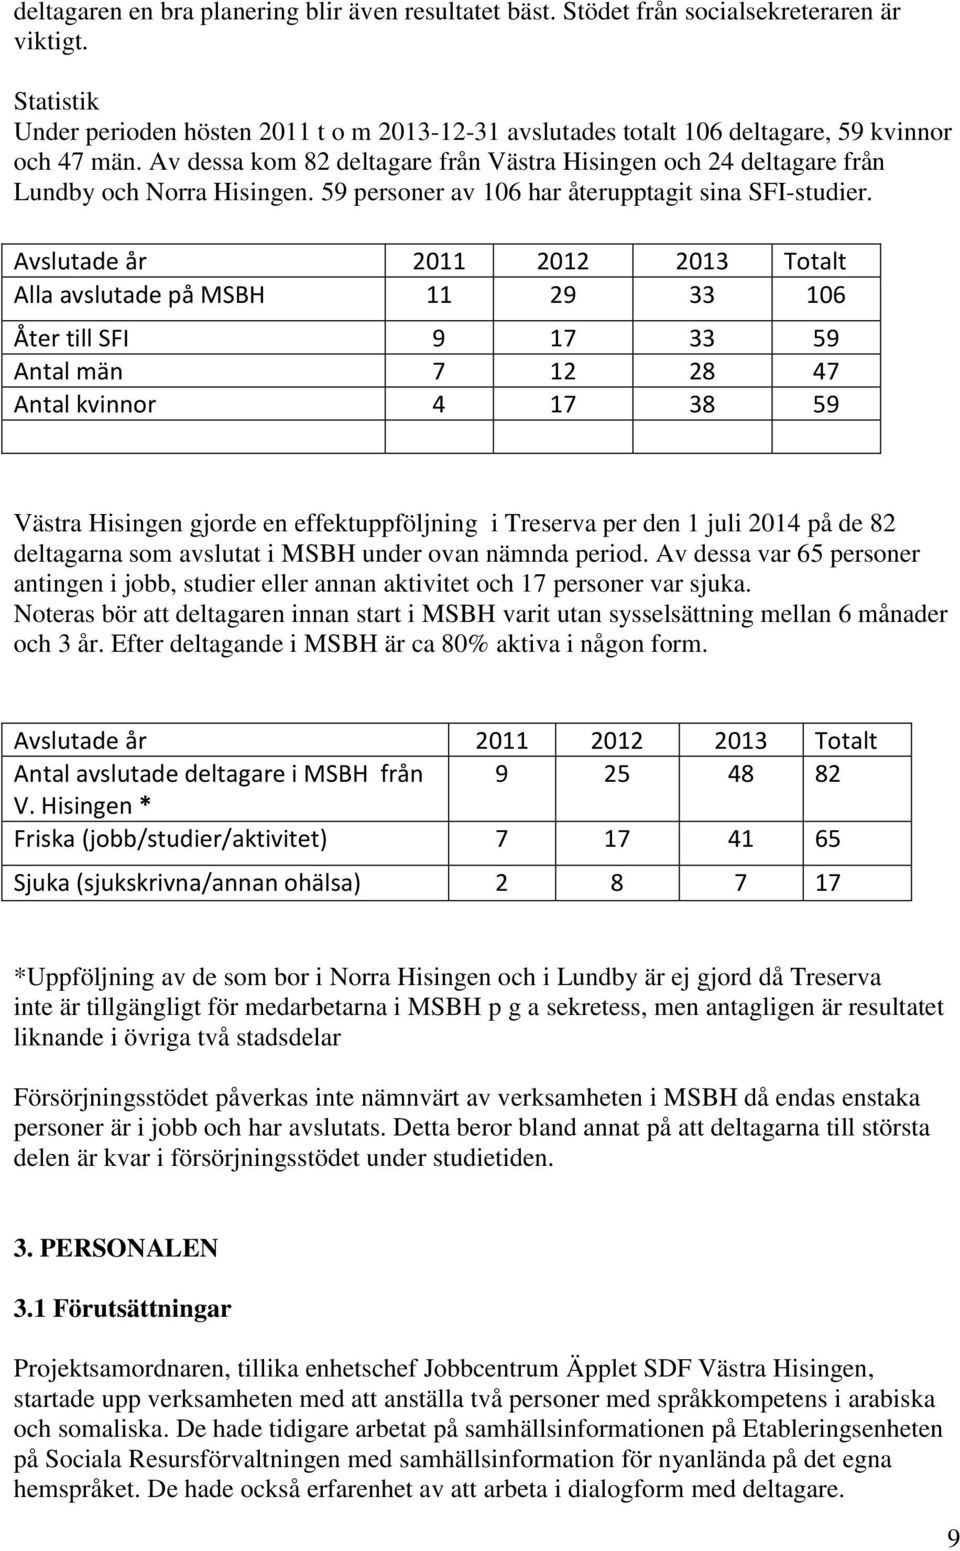 Av dessa kom 82 deltagare från Västra Hisingen och 24 deltagare från Lundby och Norra Hisingen. 59 personer av 106 har återupptagit sina SFI-studier.